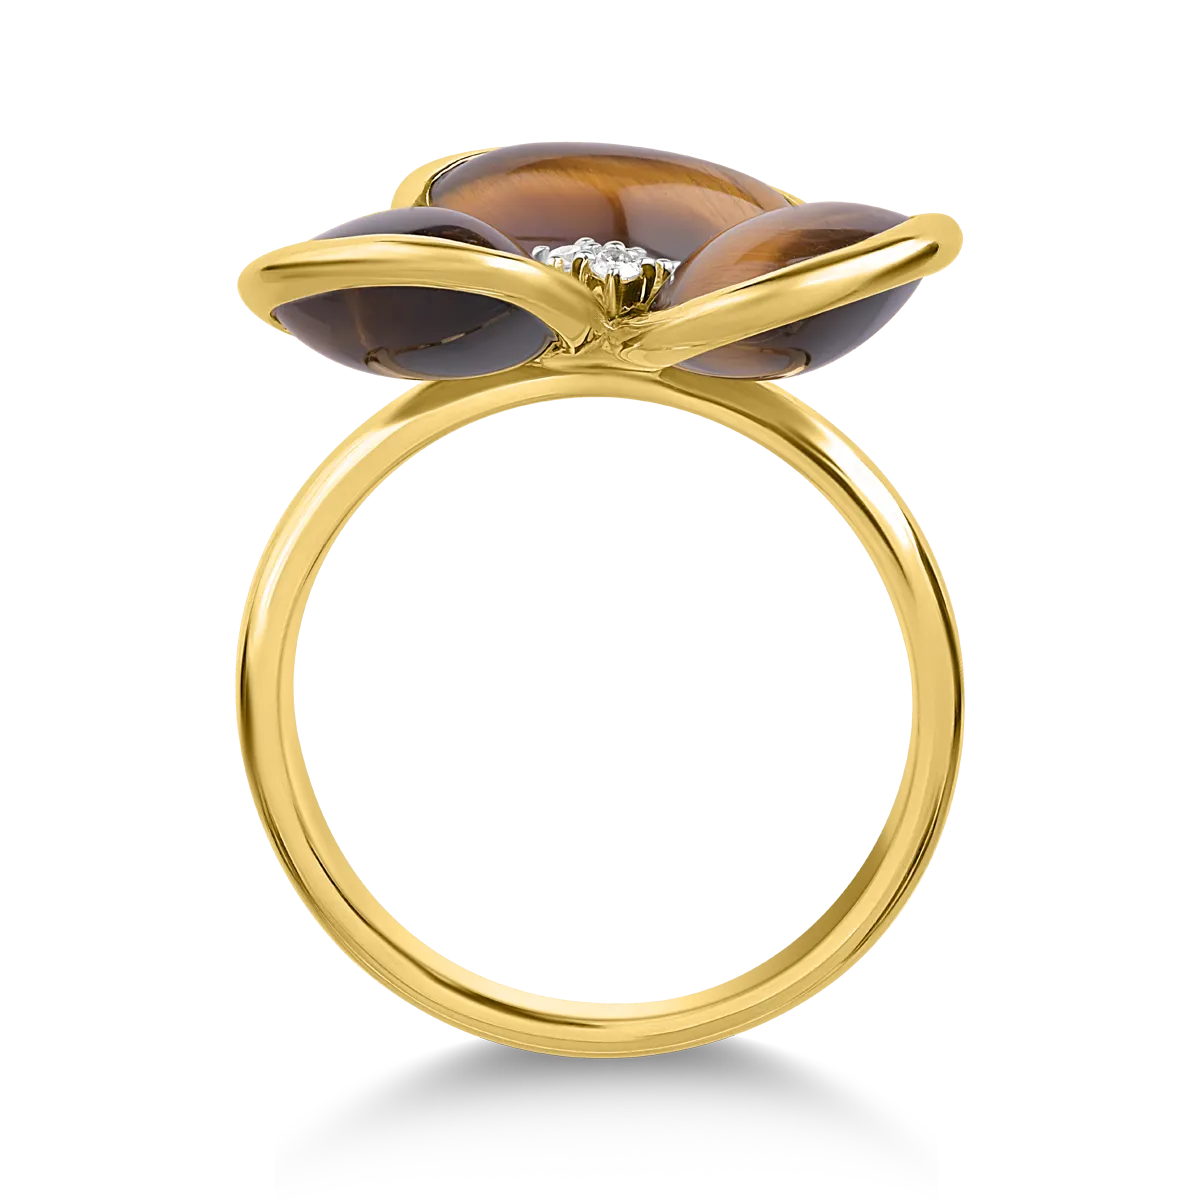 Gyűrű 18K-os sárga aranyból 7,555ct tigrisszemmel (kvarc féle, homályos) és 0,04ct gyémántokkal. Gramm: 4,78